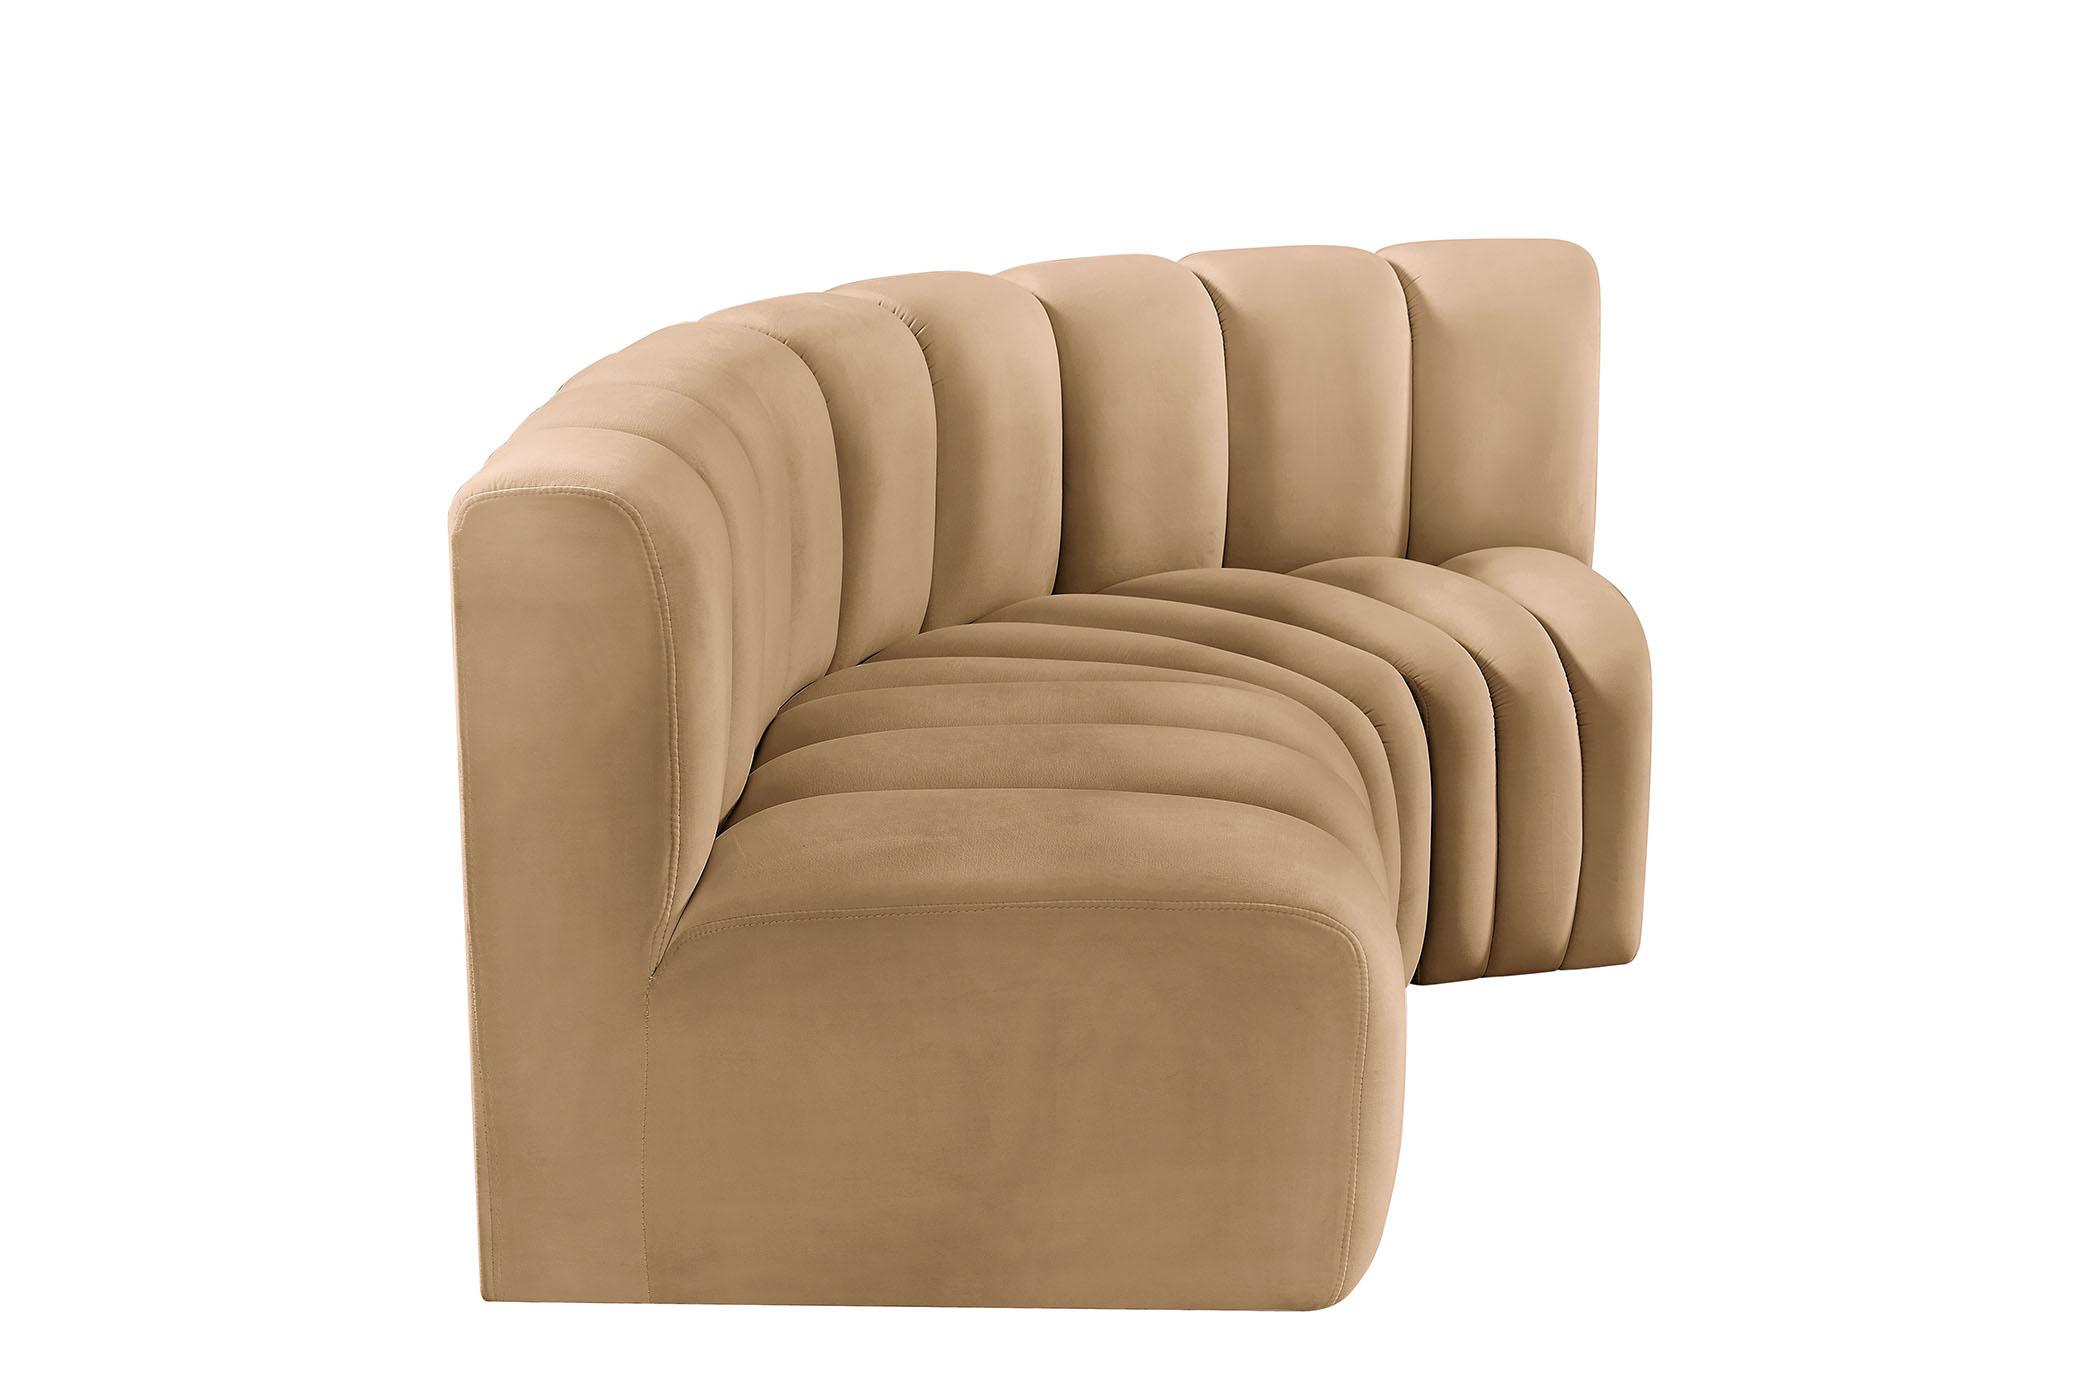 

    
103Camel-S3A Meridian Furniture Modular Sectional Sofa
